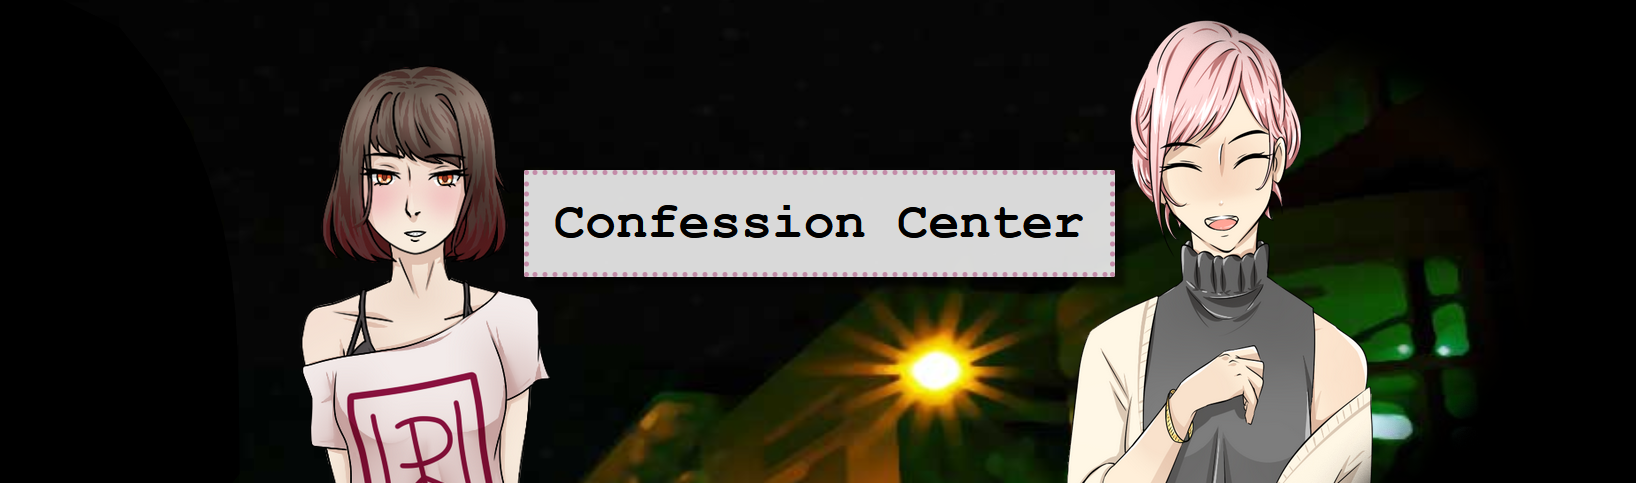 Confession Center